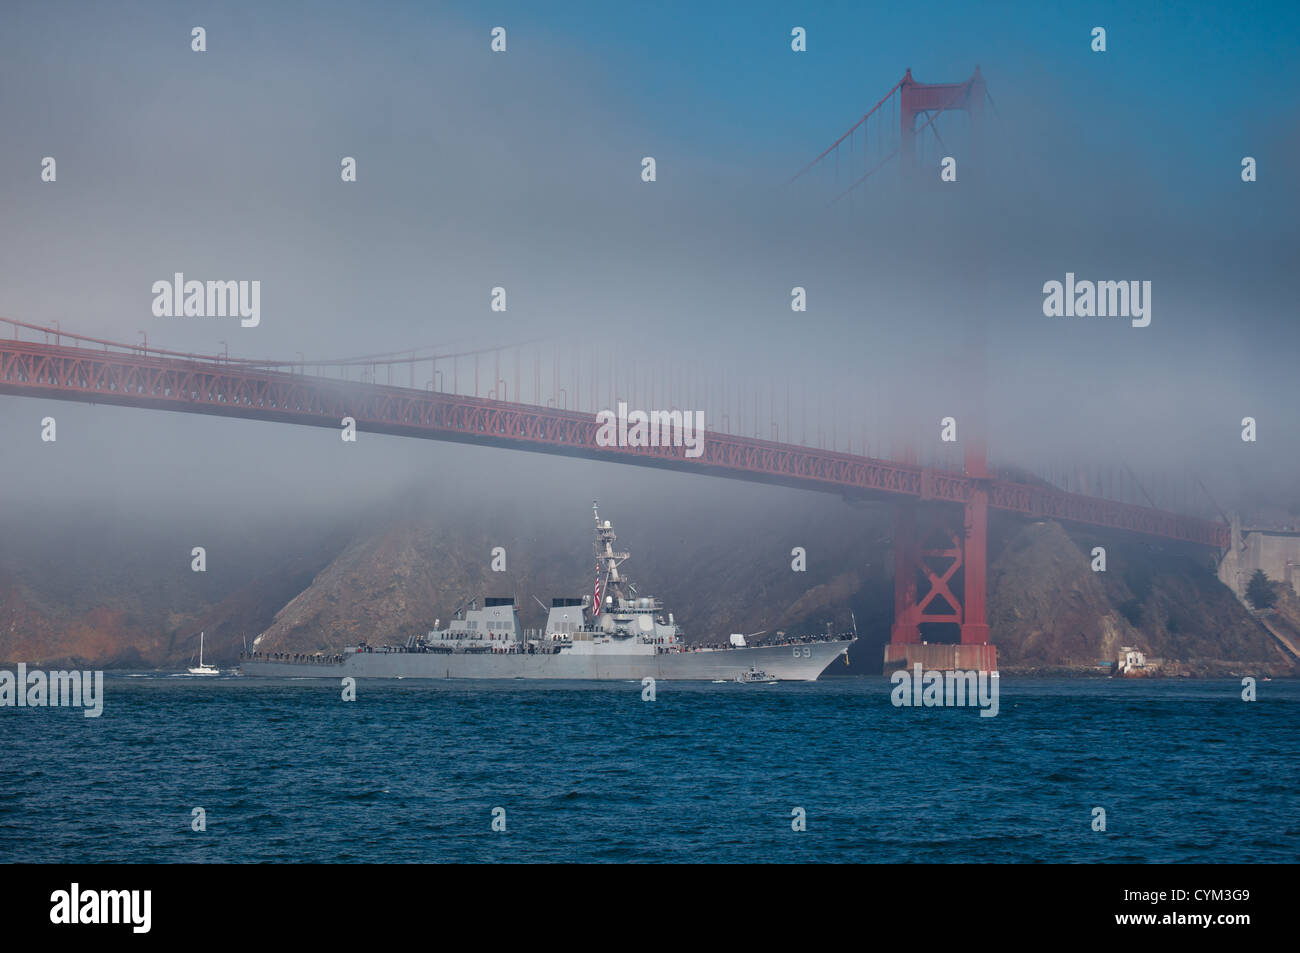 Uss milius, un destroyer lance-missiles, passe sous le pont du Golden Gate au cours de la semaine du 8 octobre 2011 à san francisco Banque D'Images